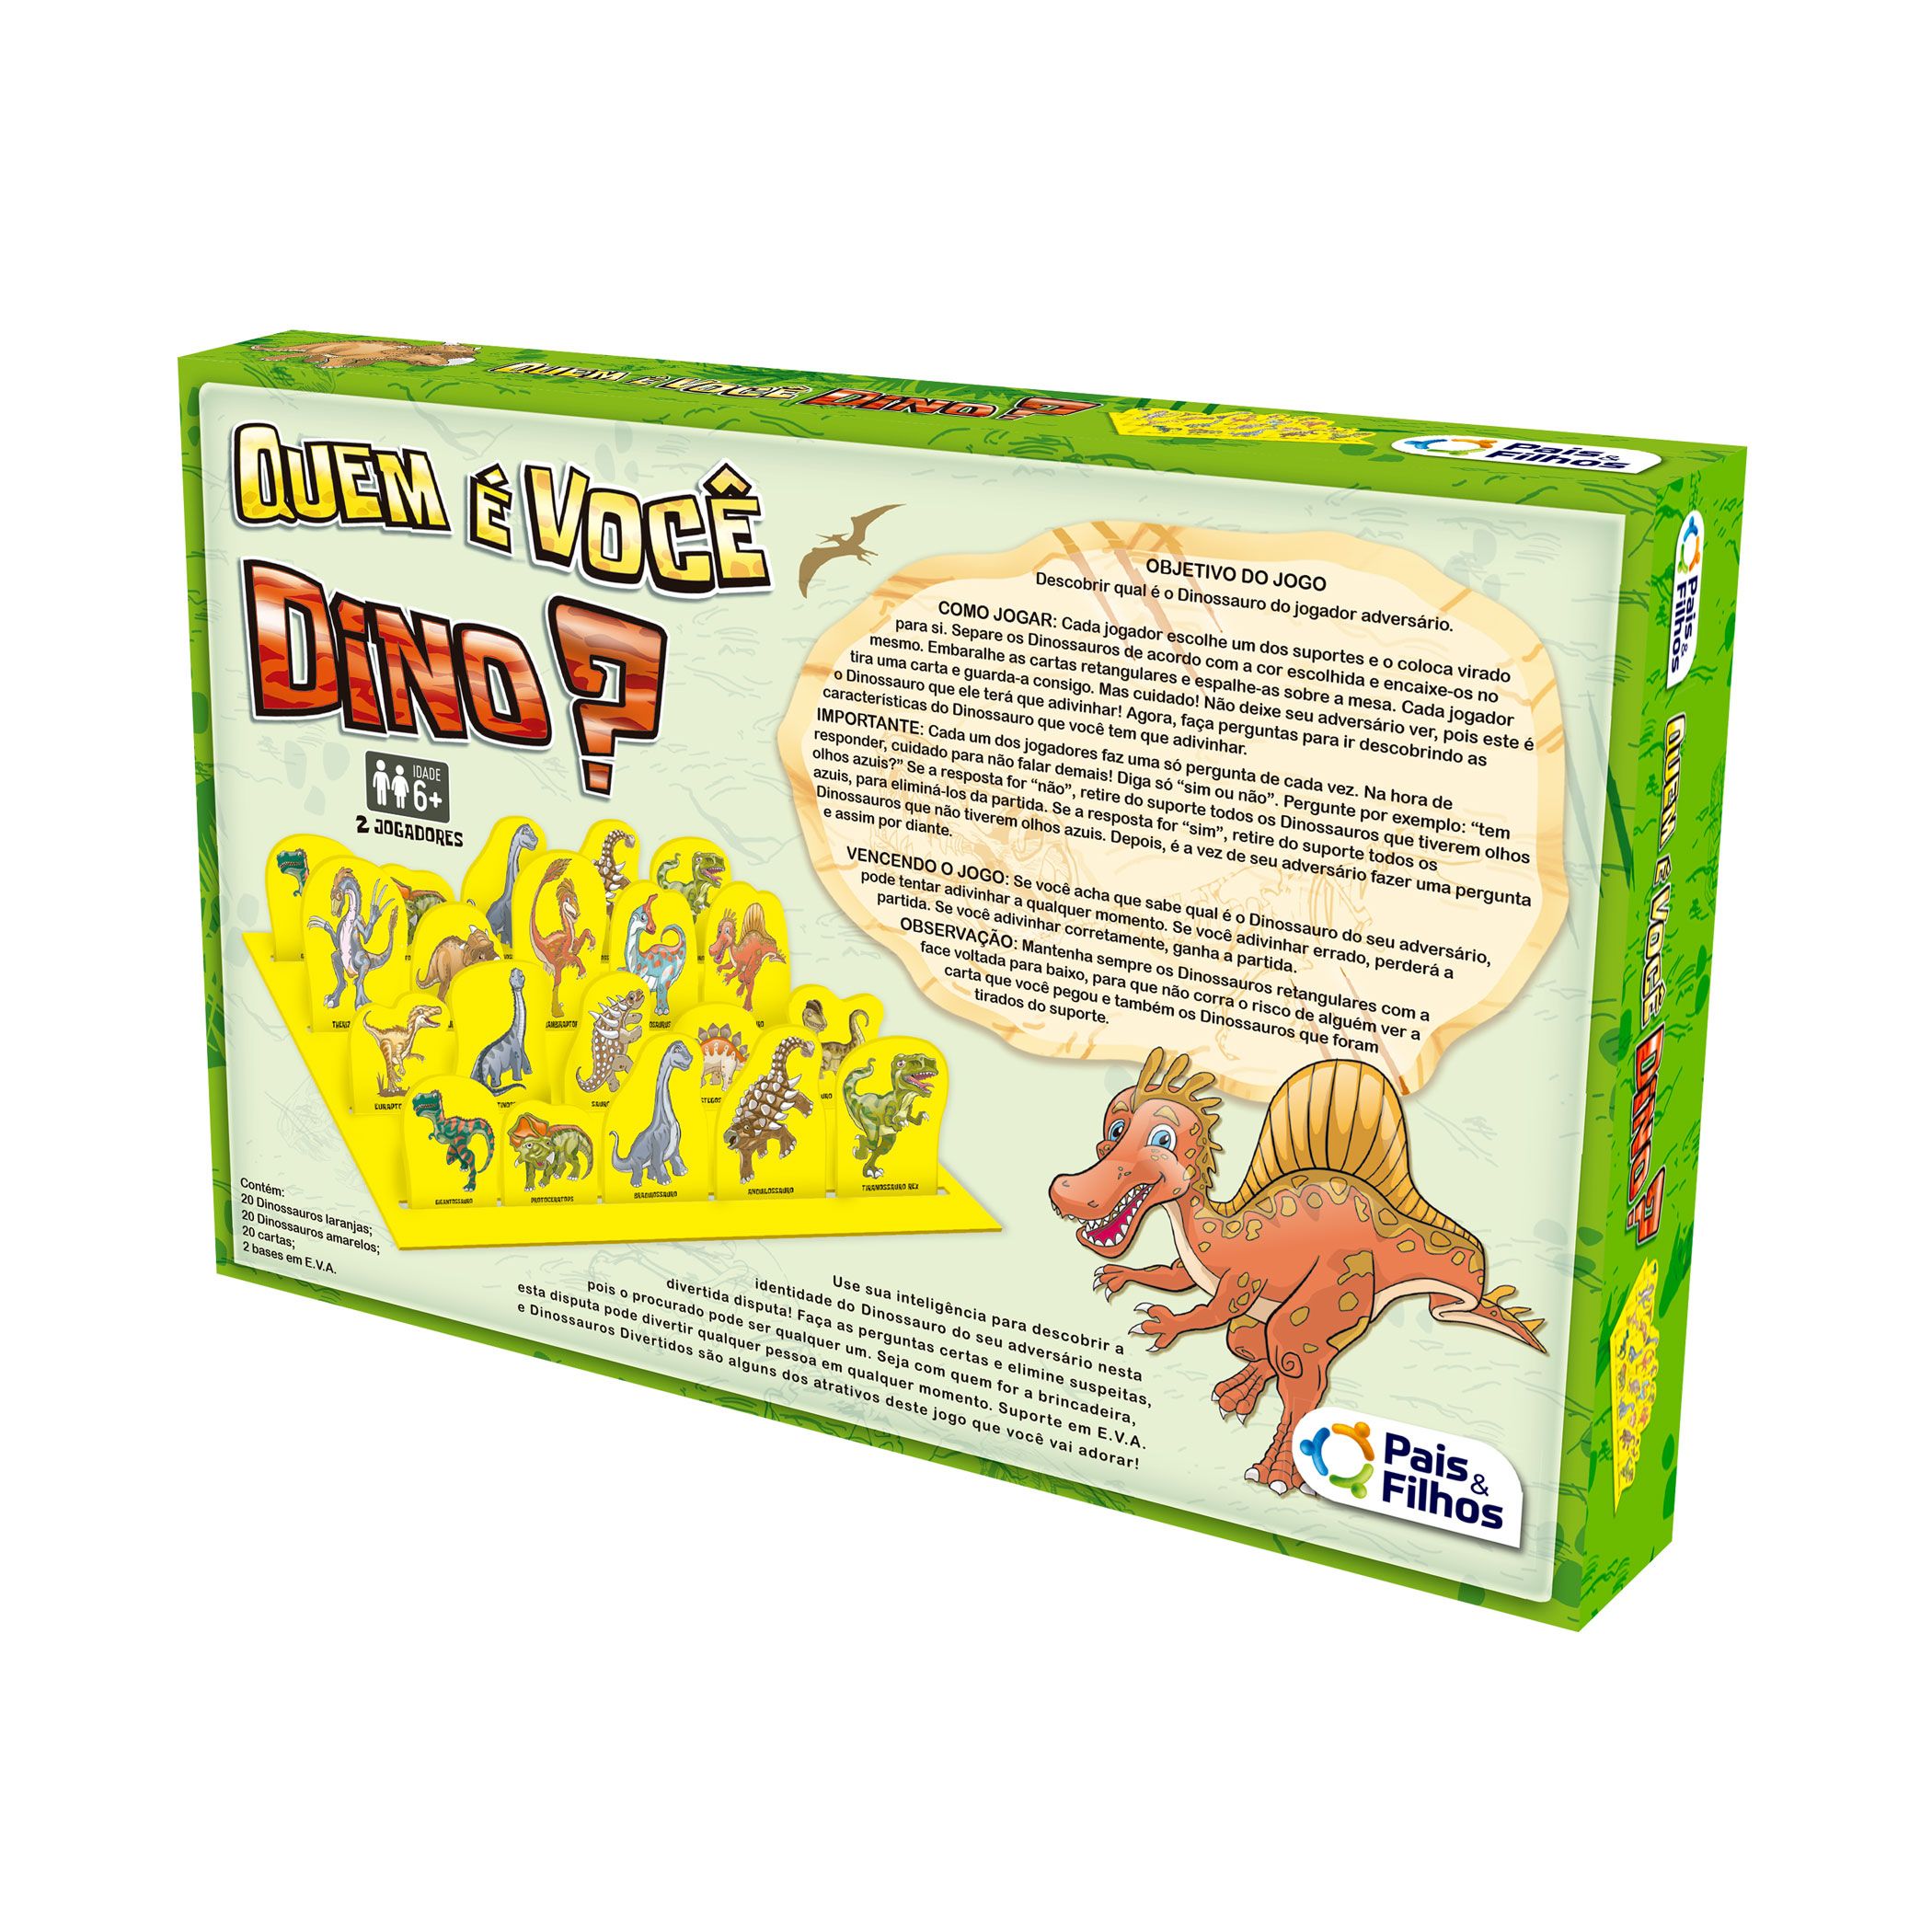 O jogo do dinossauro: Com o melhor preço